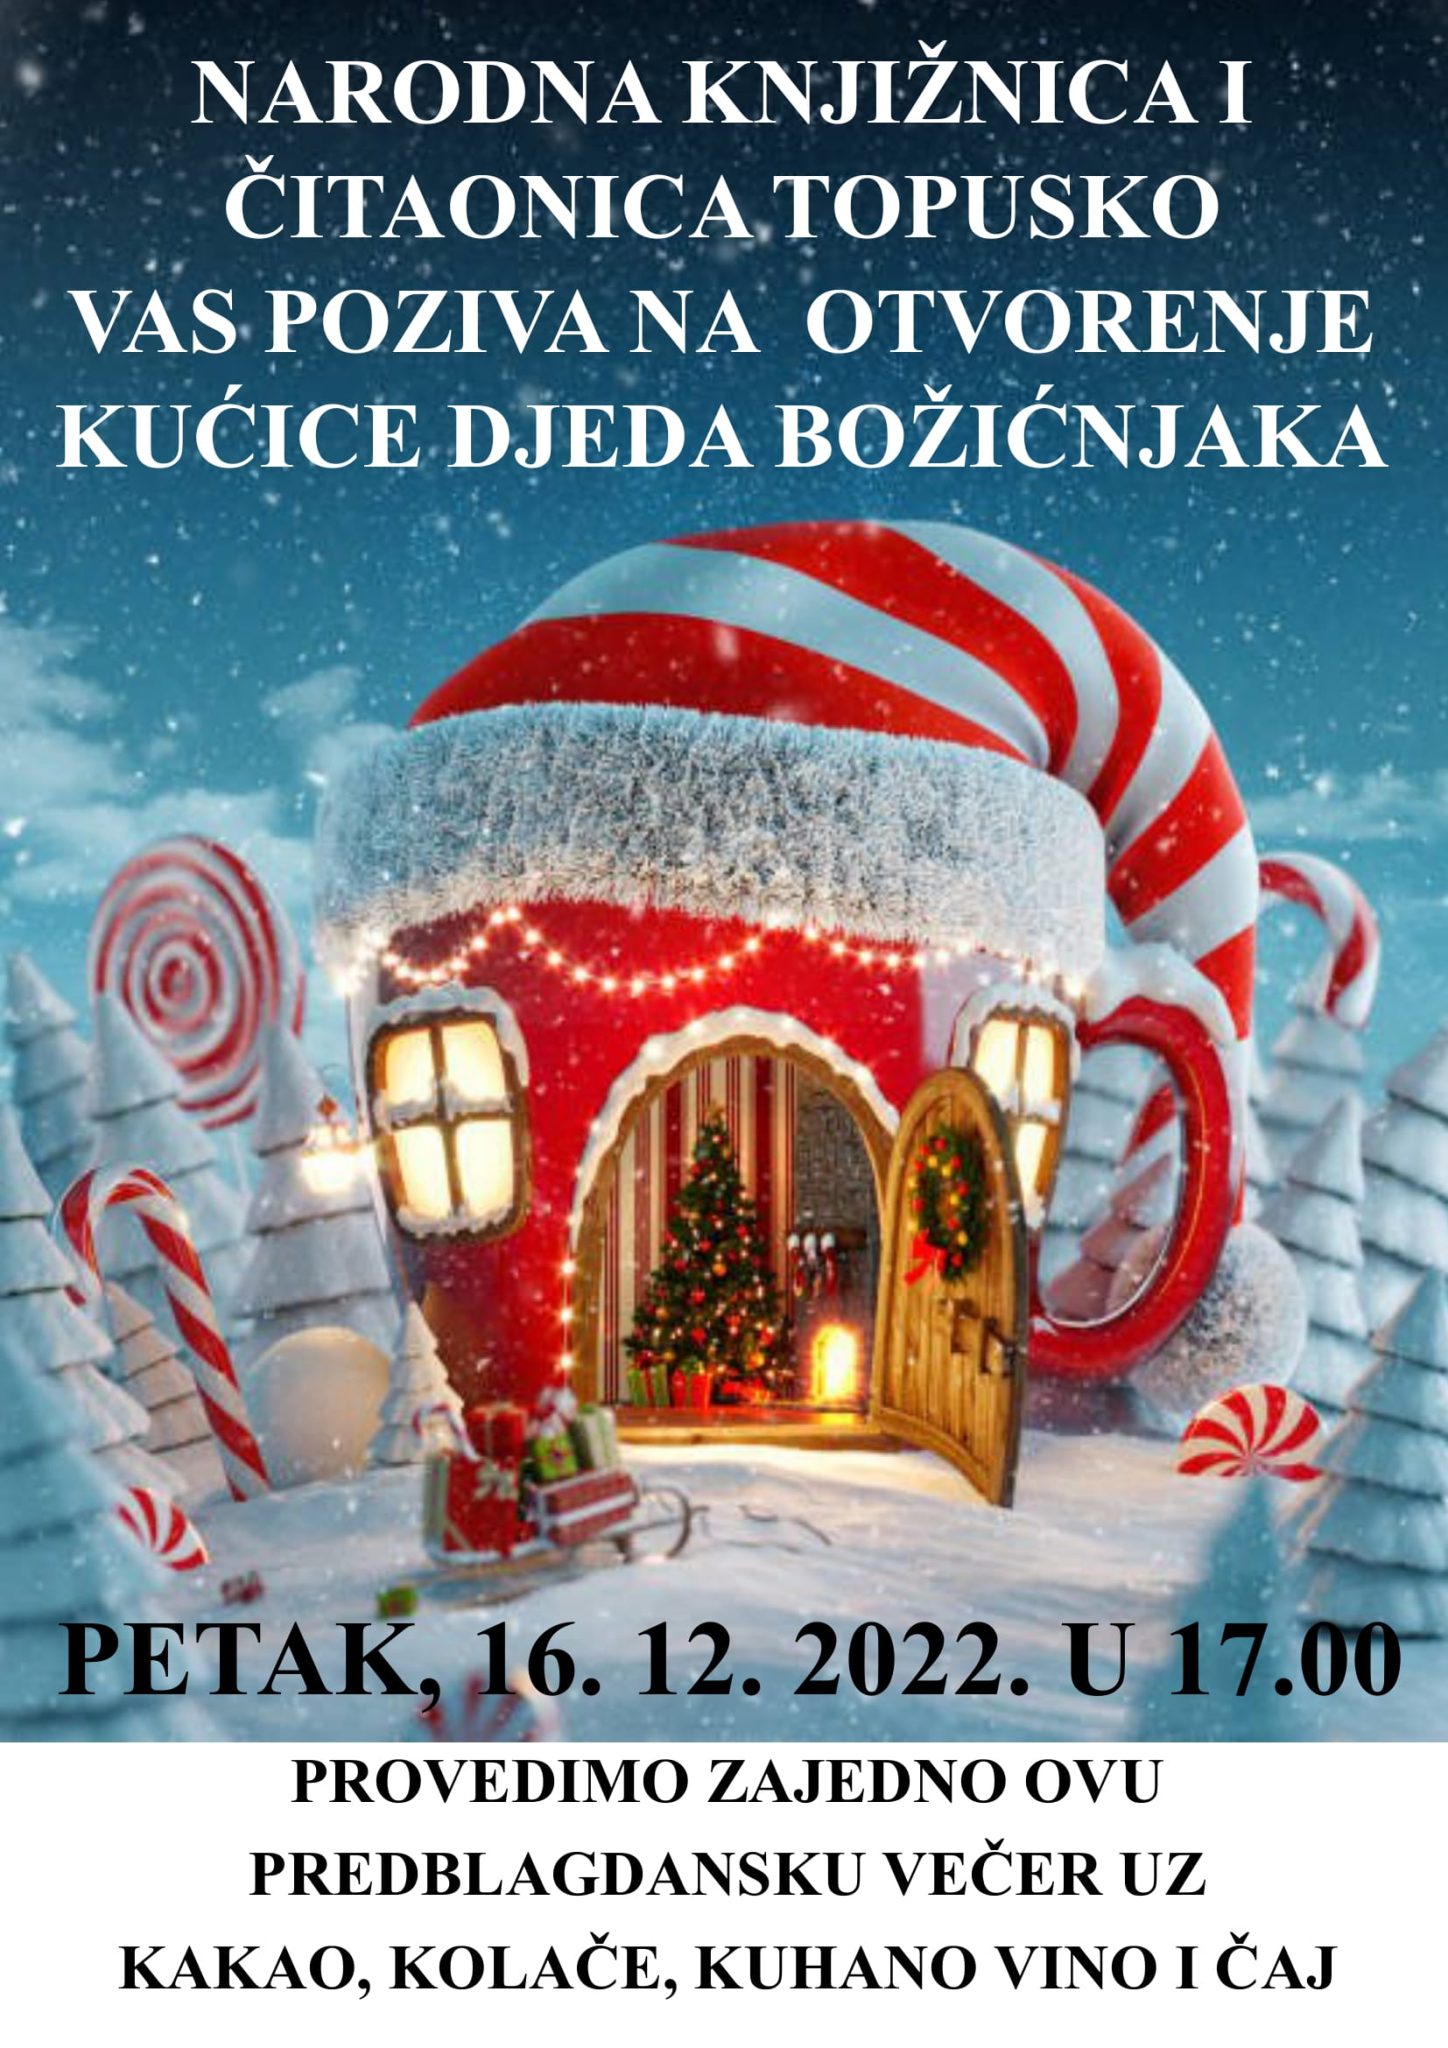 OTVORENJE KUĆICE DJEDA BOŽIĆNJAKA 16.12.2022.